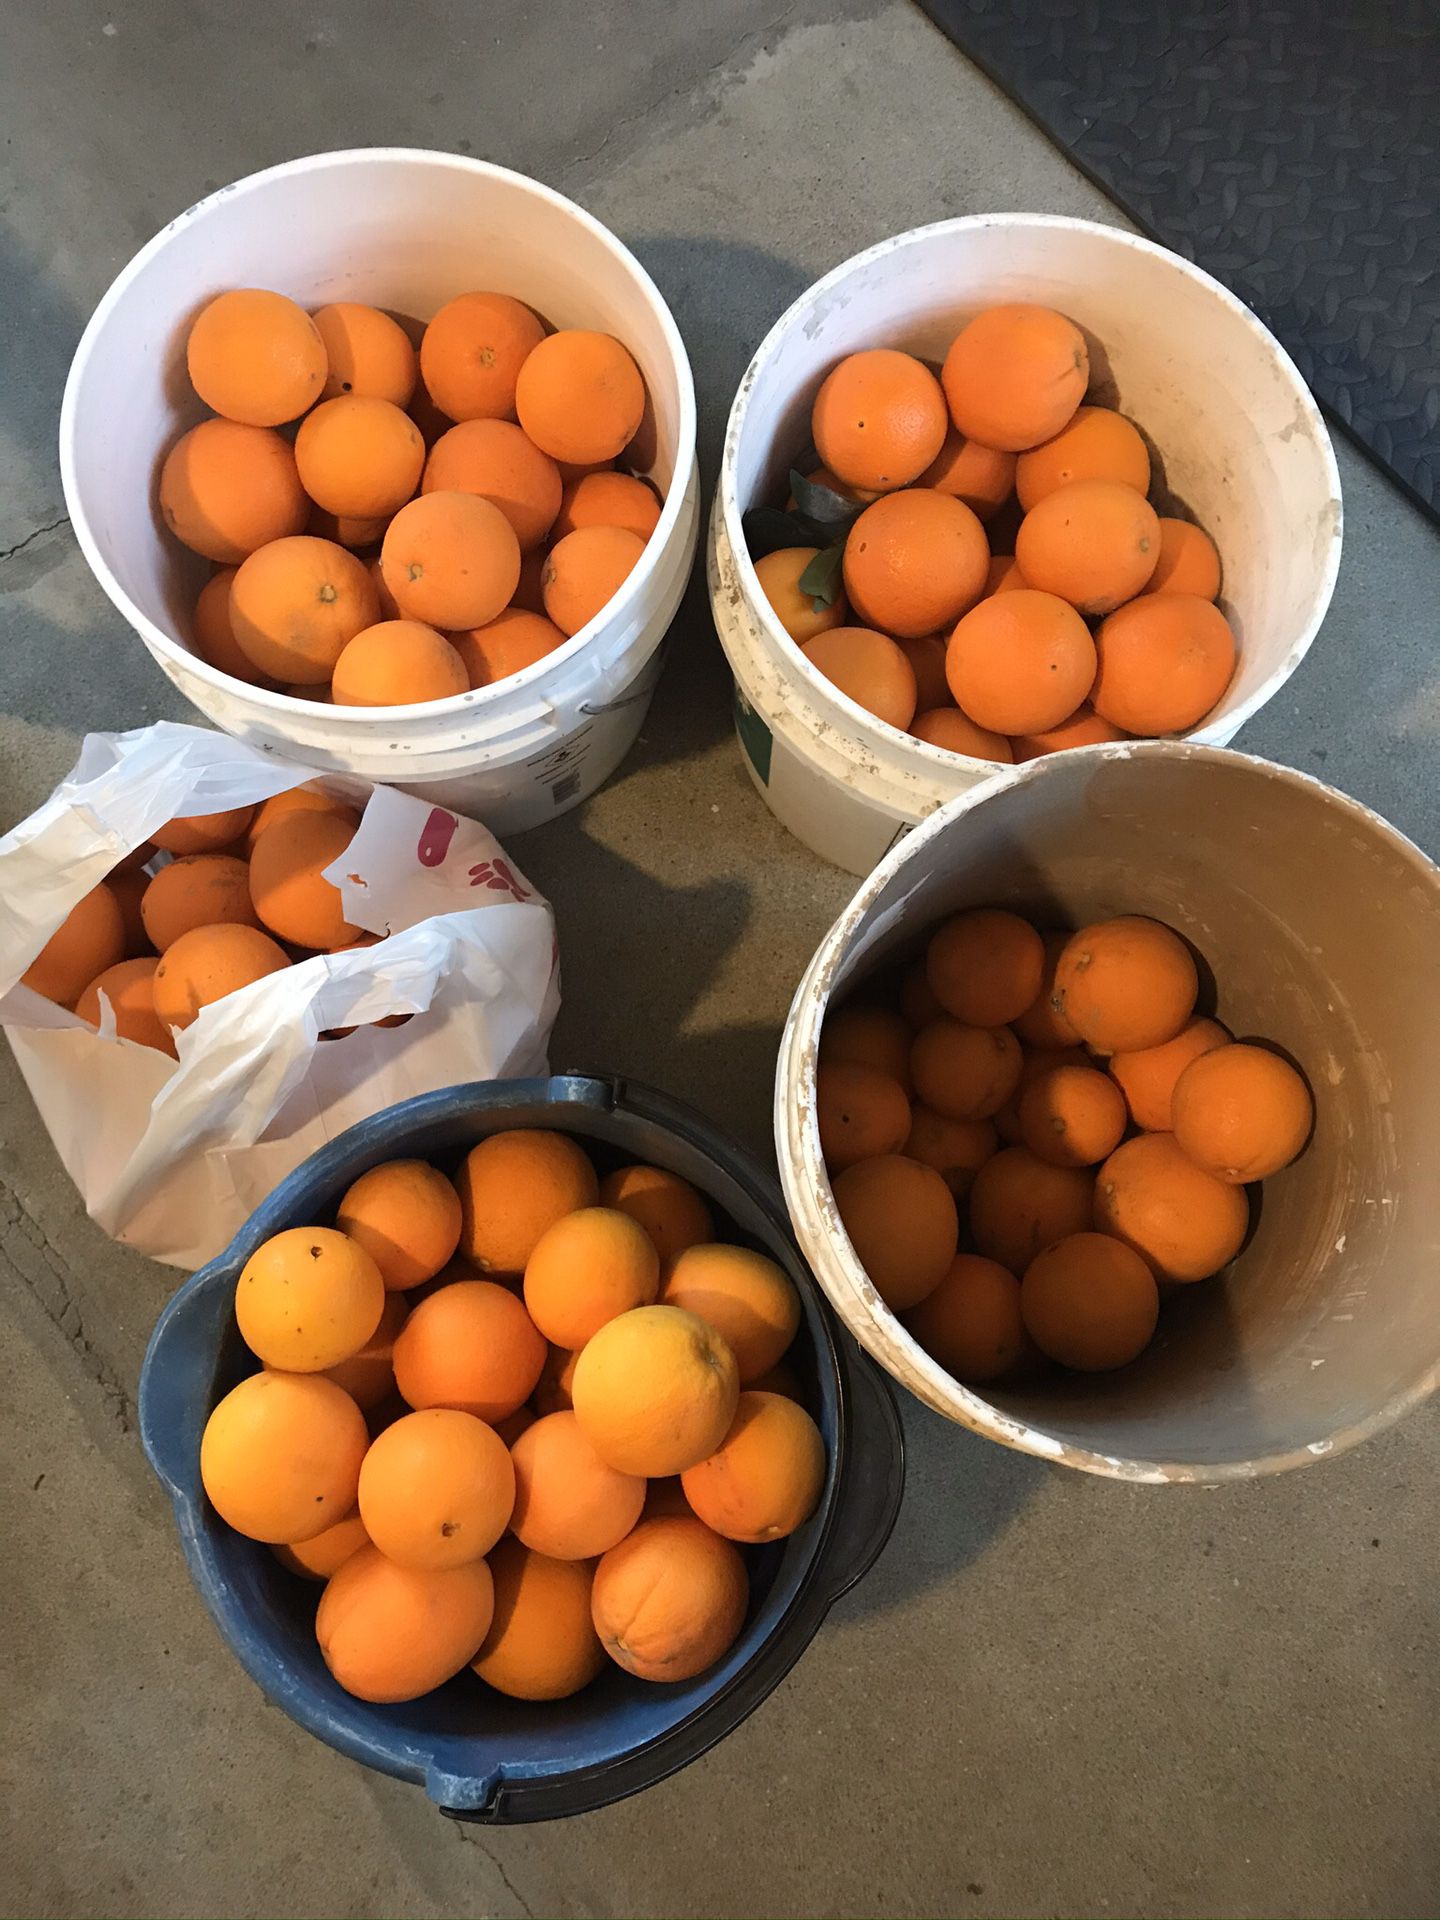 Organic Oranges